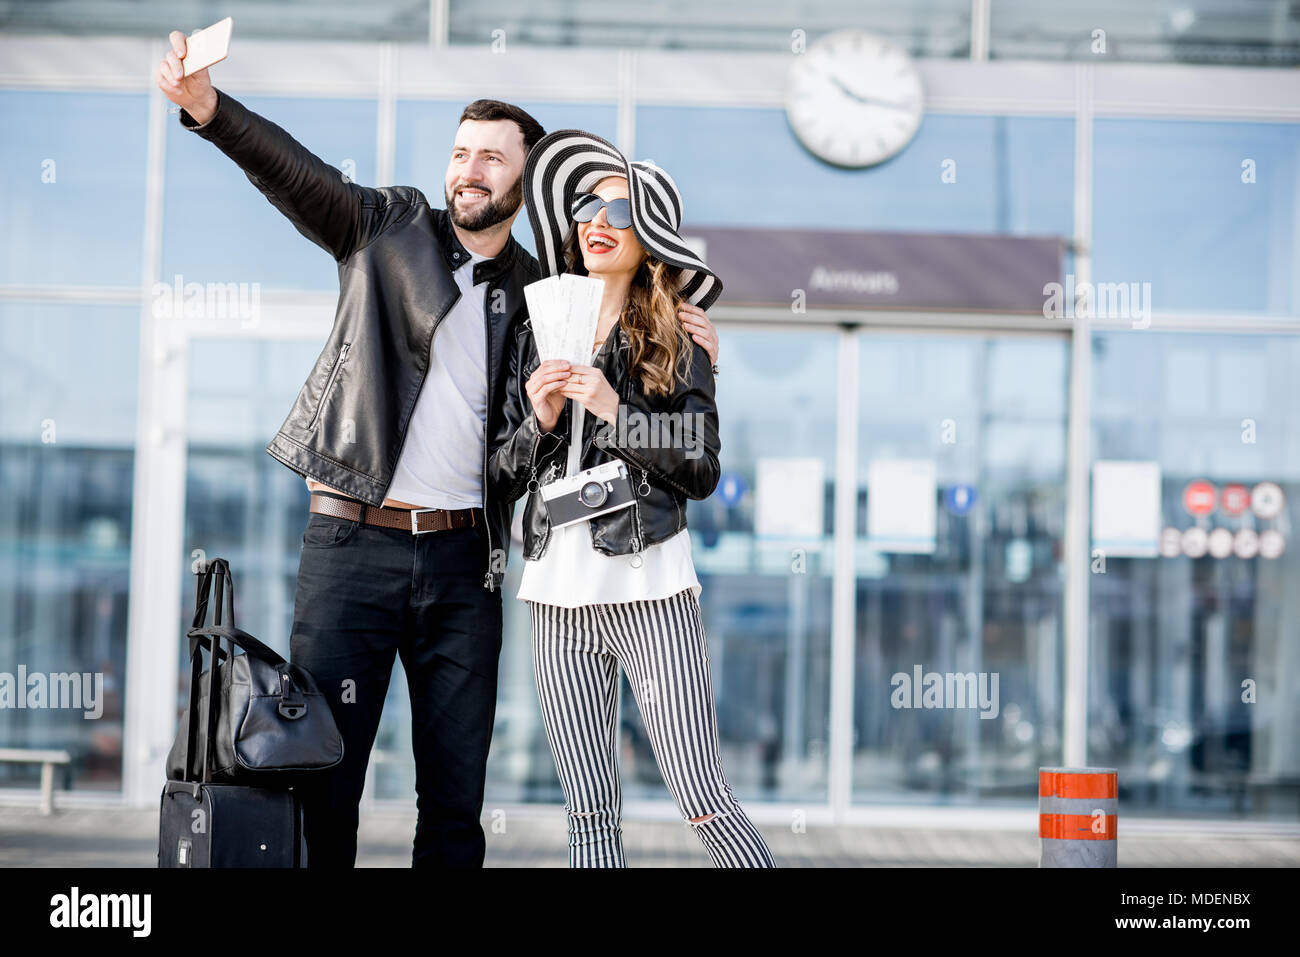 Junges Paar von Reisenden in Lederjacken, selfie Foto stehen vor der Ankunftshalle des Flughafens. Stockfoto